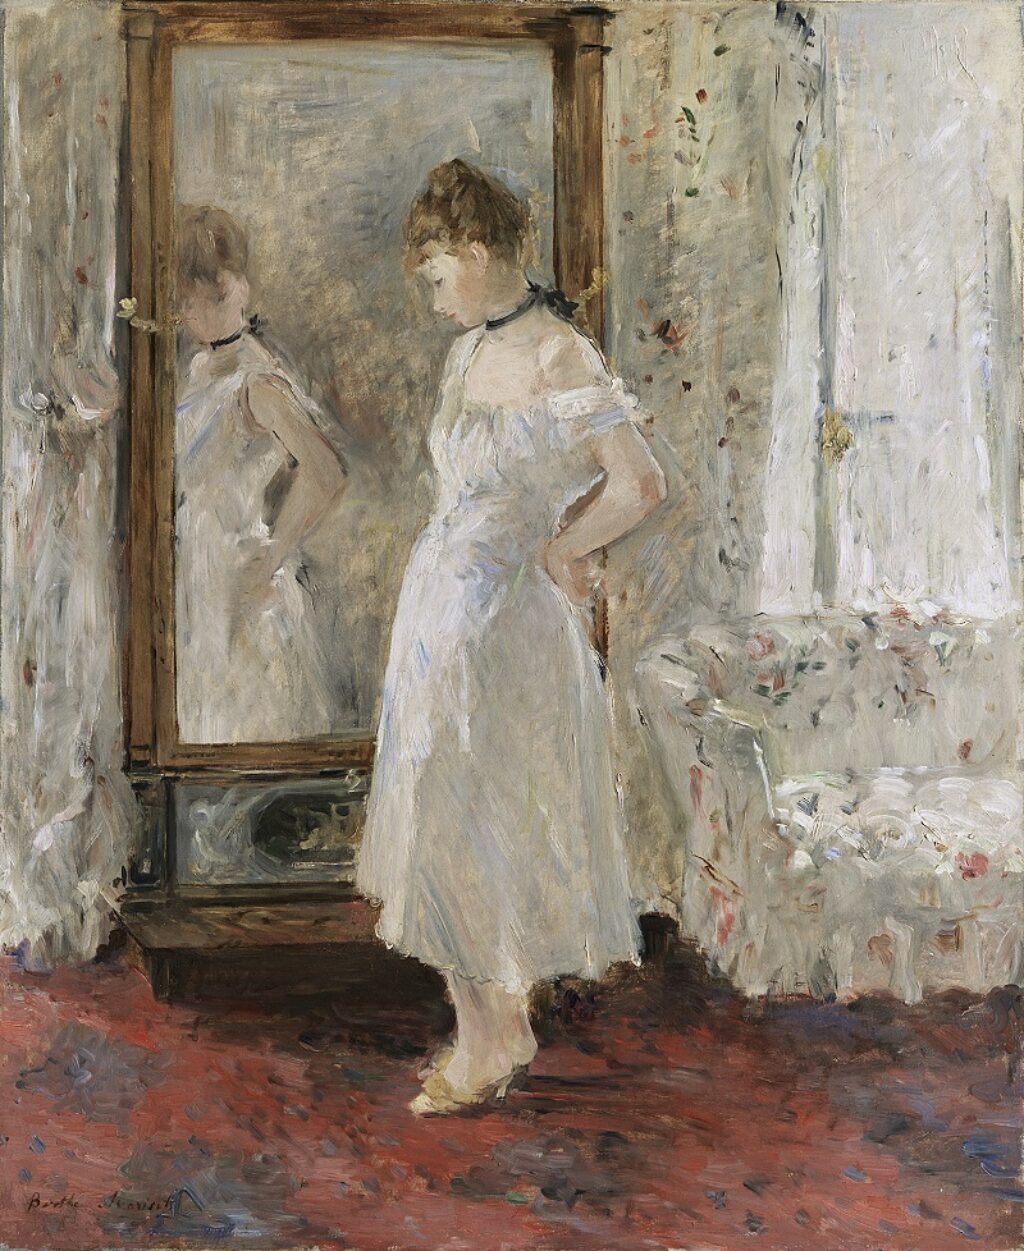 Obra de Berthe Morisot donde puede verse a una mujer frente a un espejo, de pie y de cuerpo entero vestida de blanco.